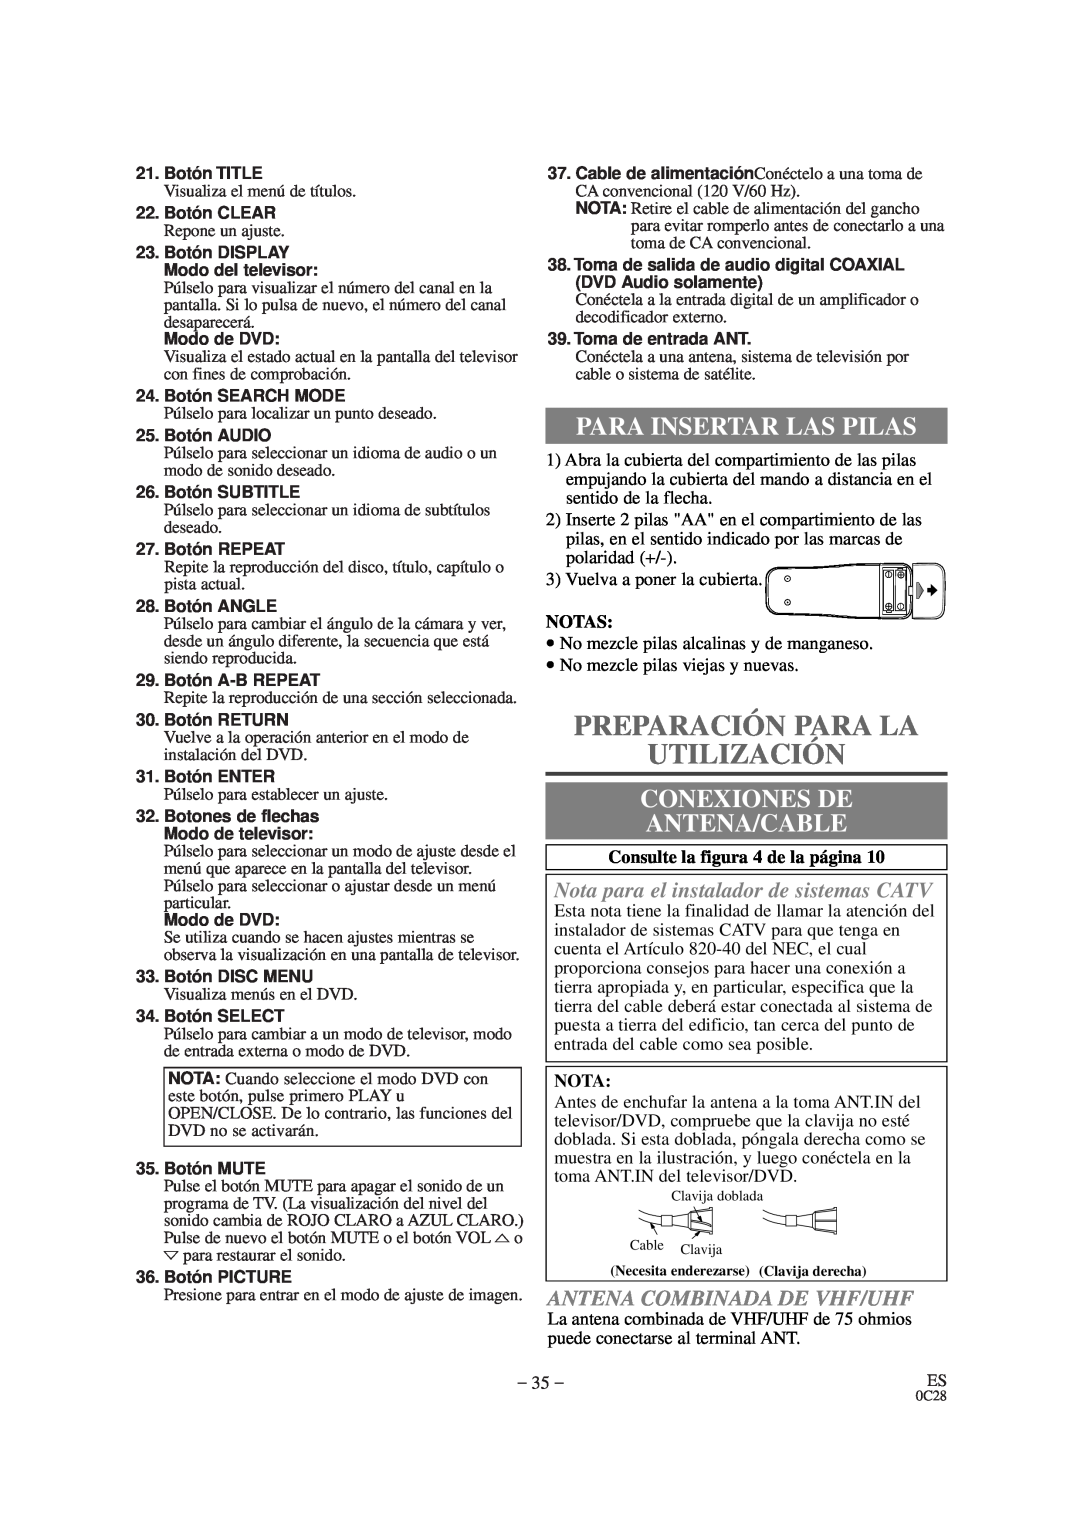 Sylvania SRTD420 owner manual Preparación Para La Utilización, Para Insertar Las Pilas, Conexiones De Antena/Cable, Notas 